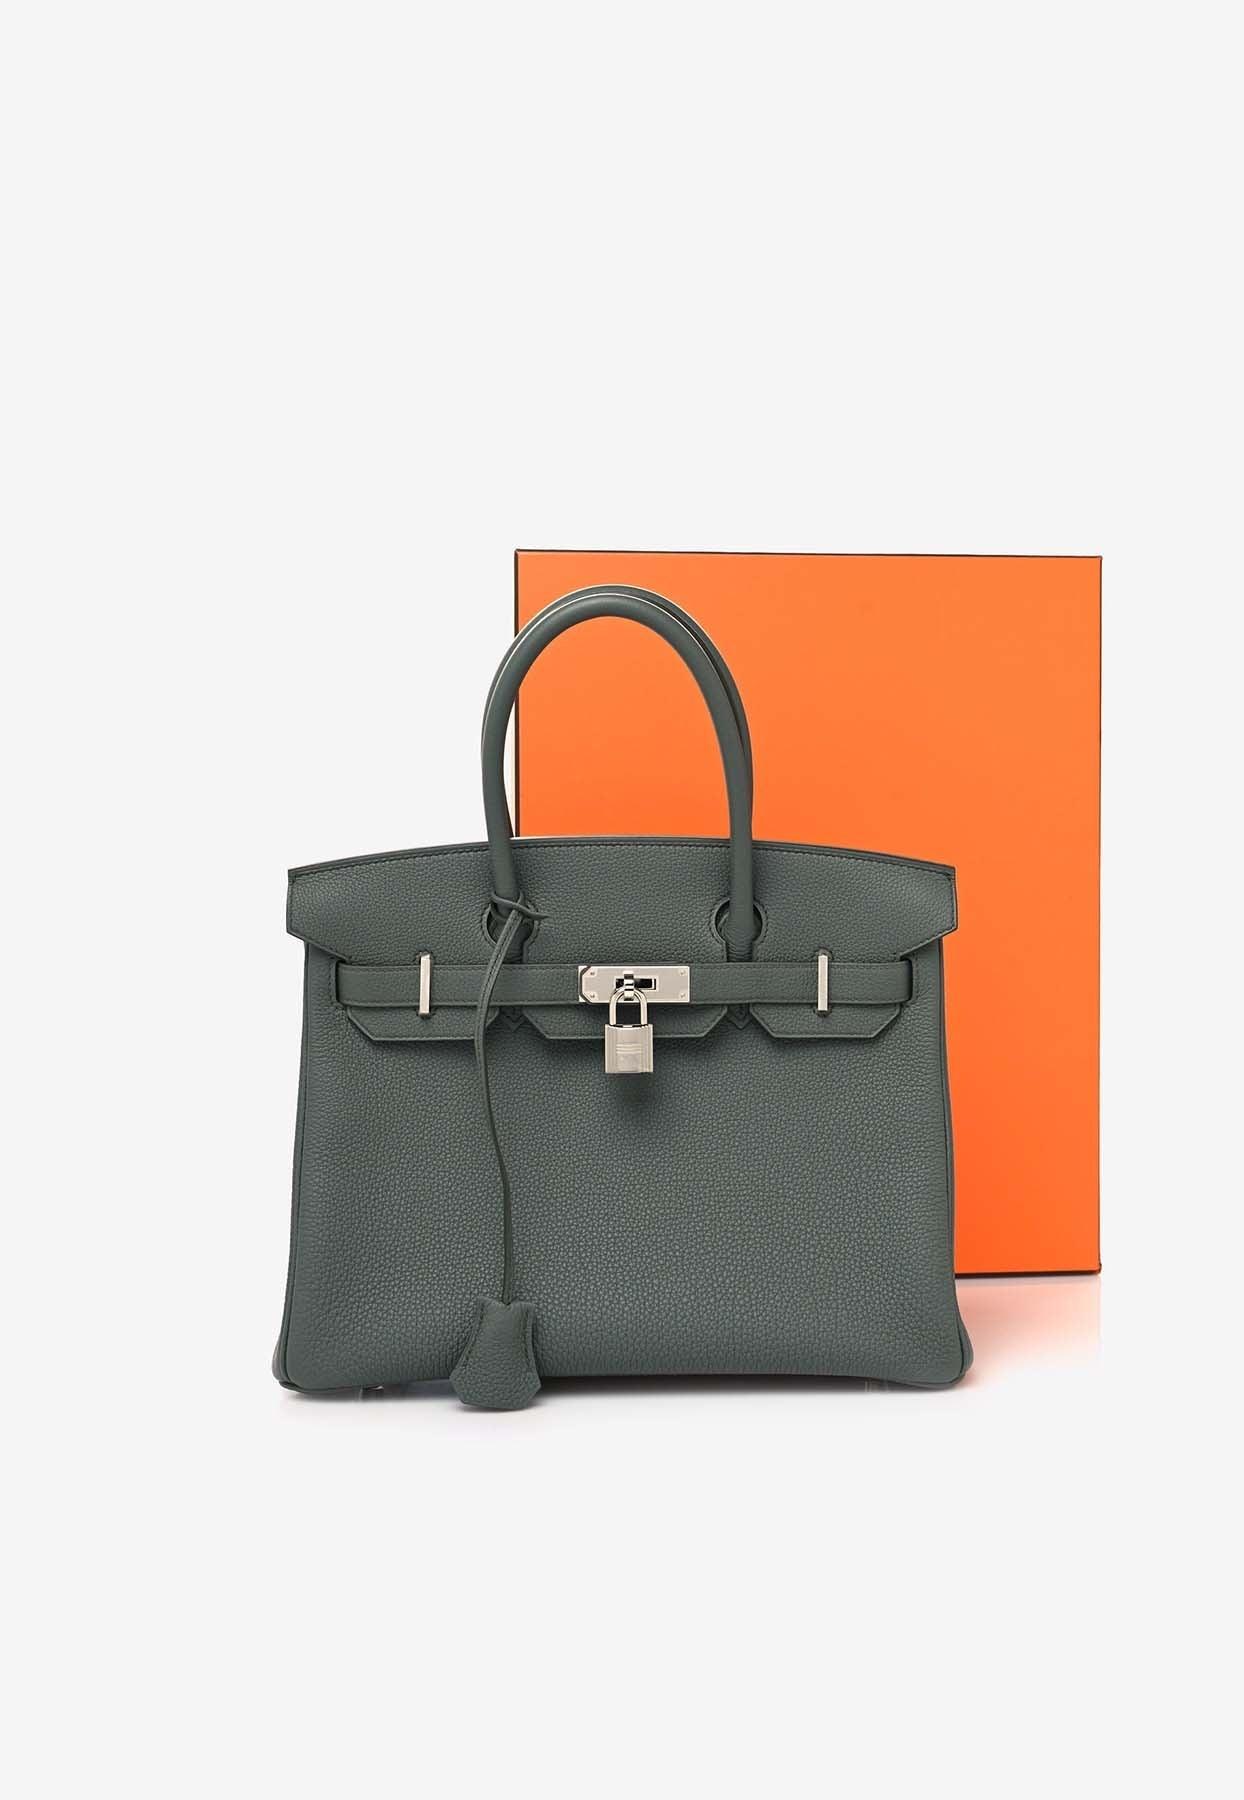 Hermès Birkin 30 In Vert Amande Togo Leather With Palladium